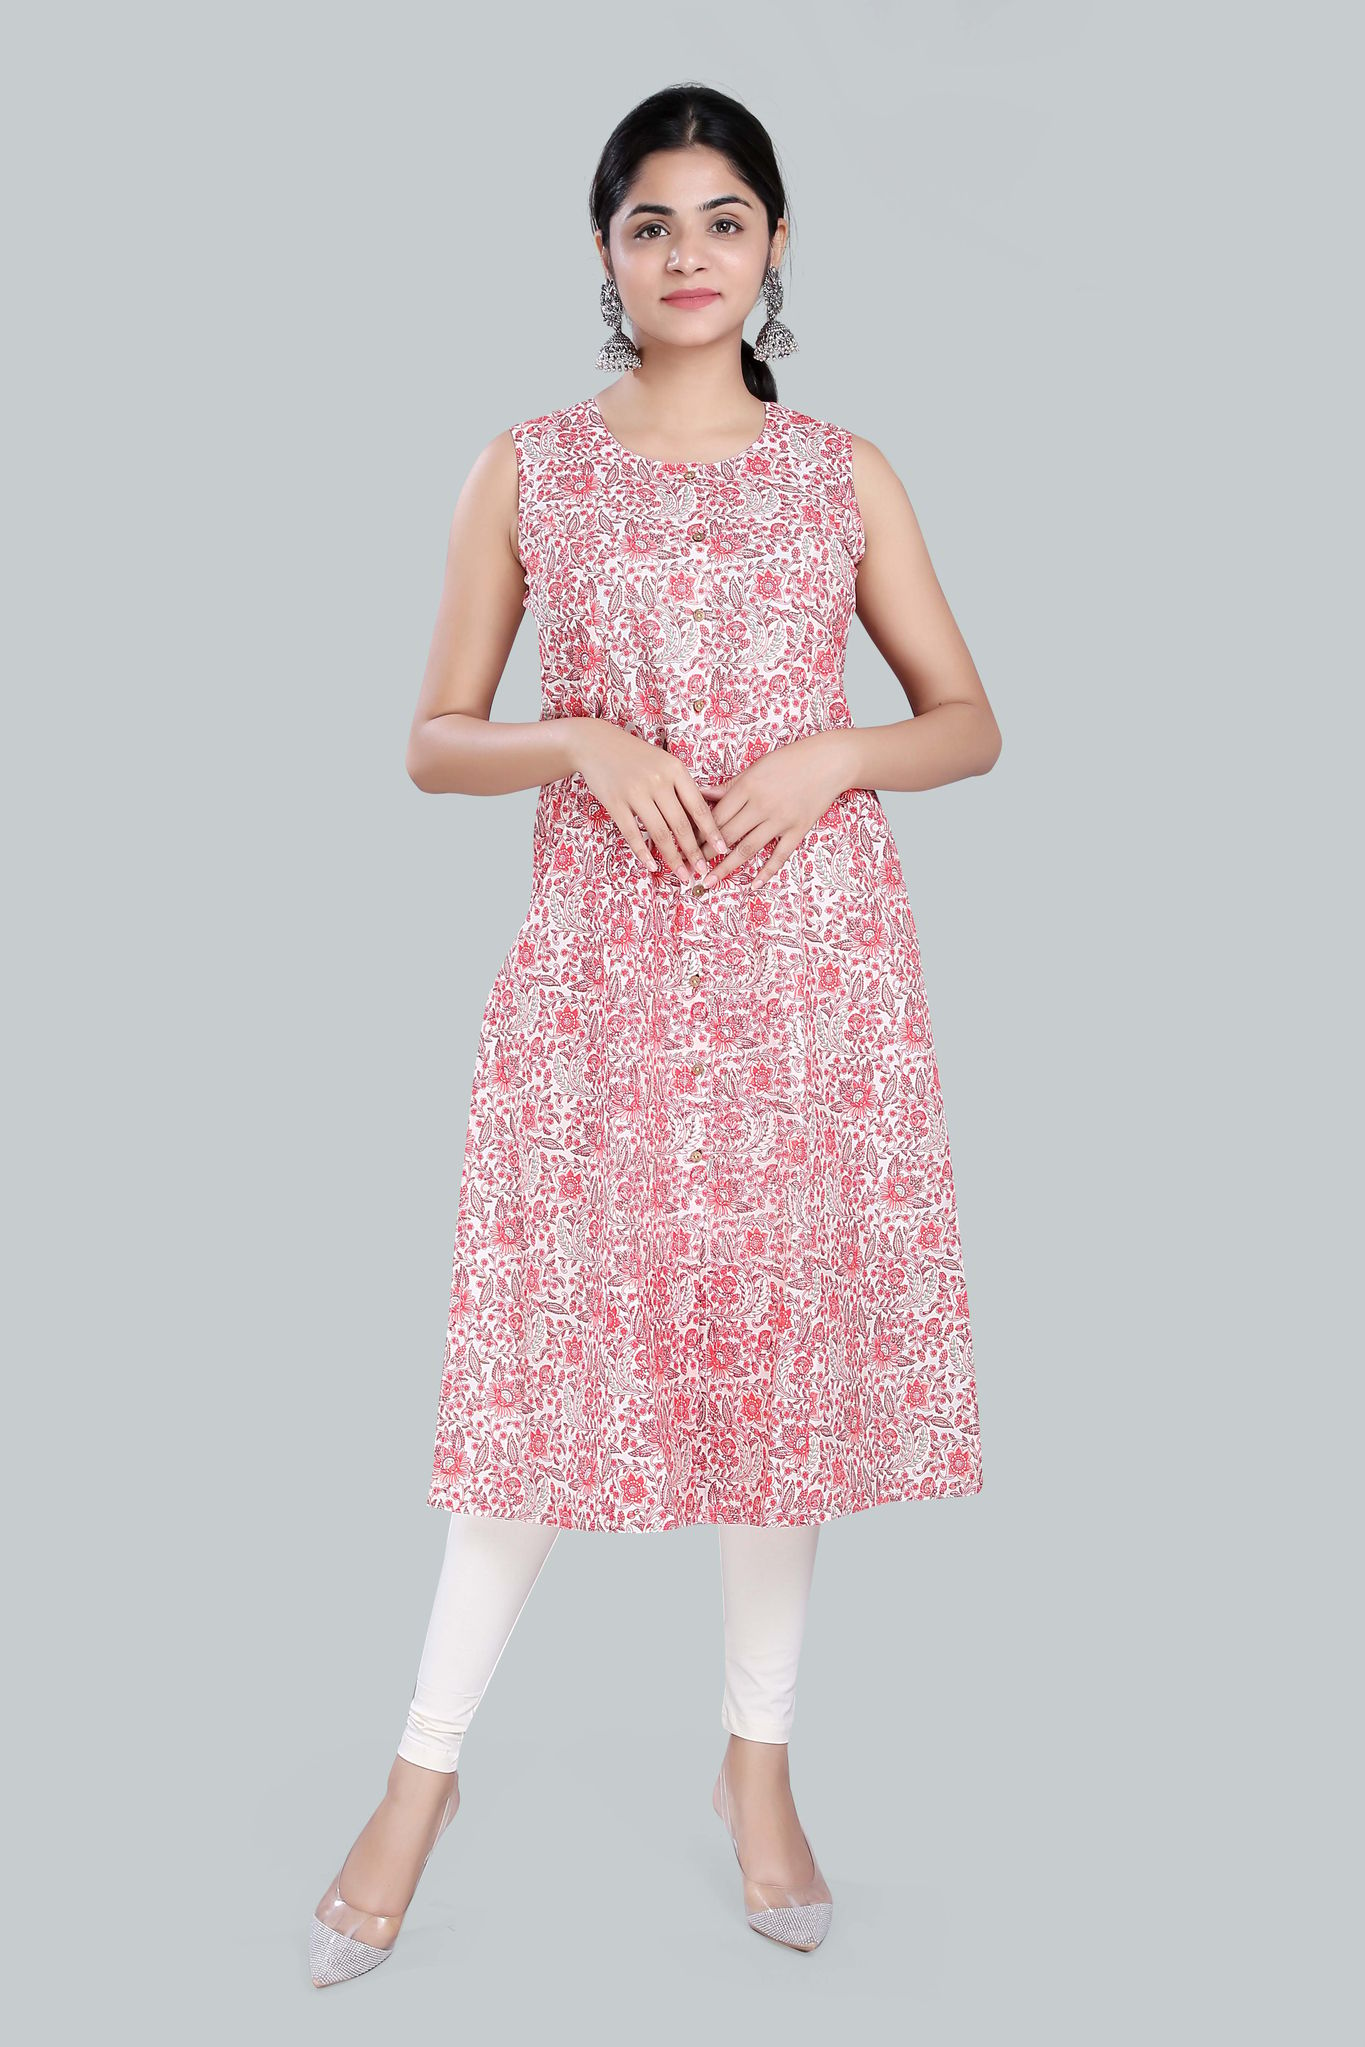 Abra Pink Jaipuri Cotton Sleeves Kurti